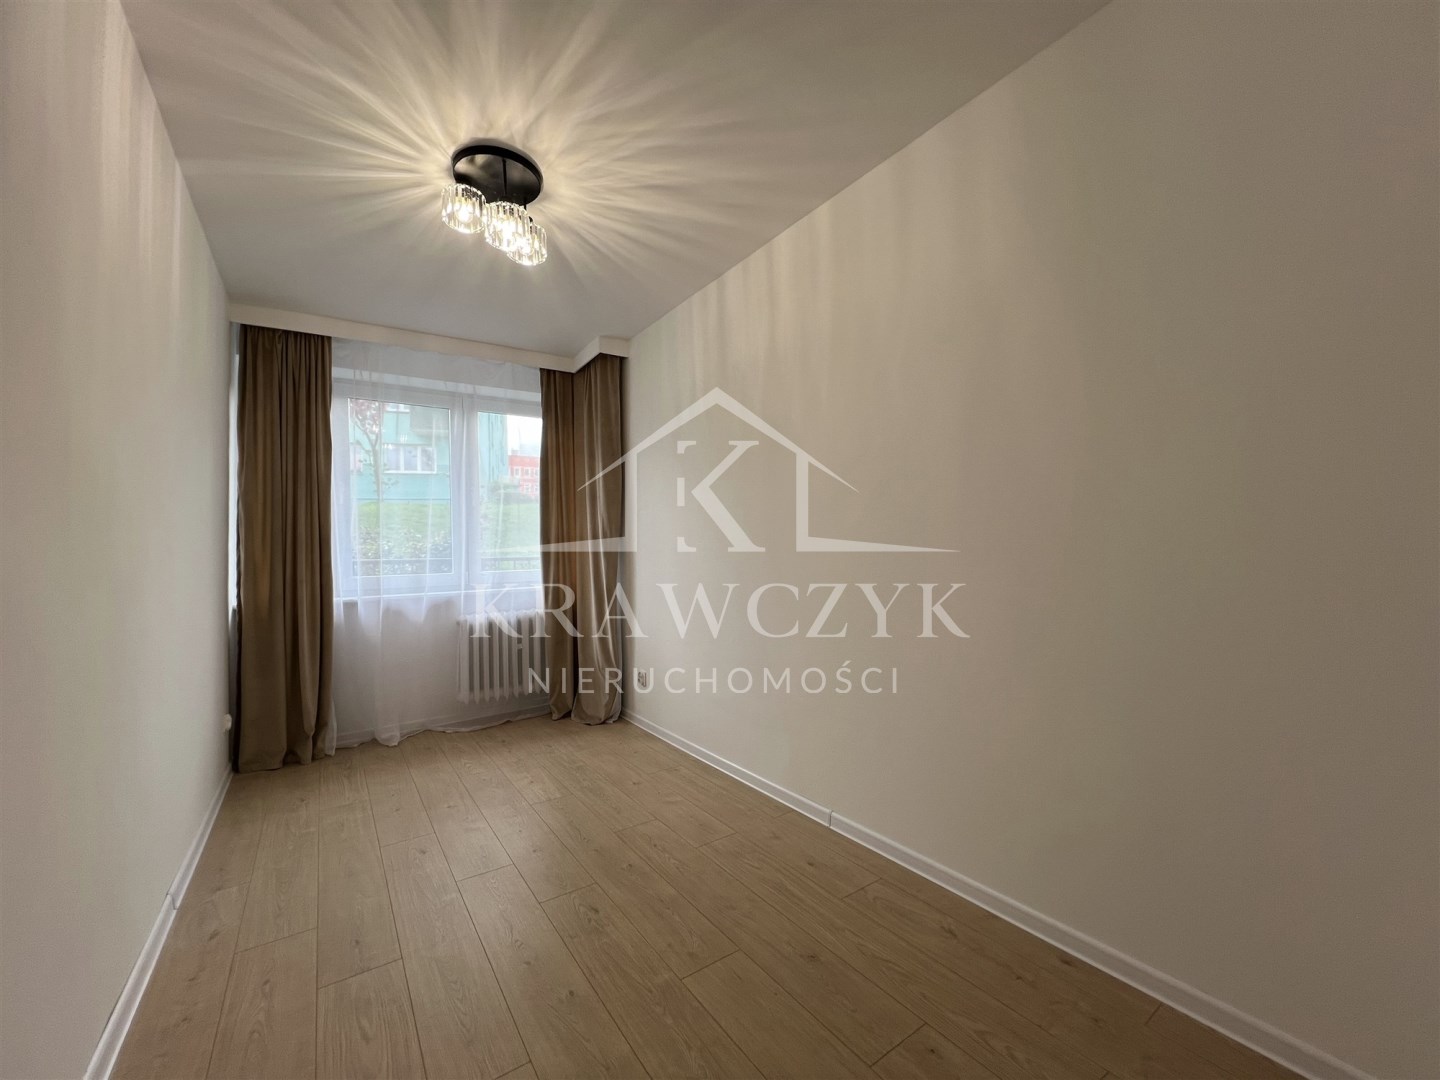 Mieszkanie, 3 pok., 47 m2, Szczecin Centrum (4)